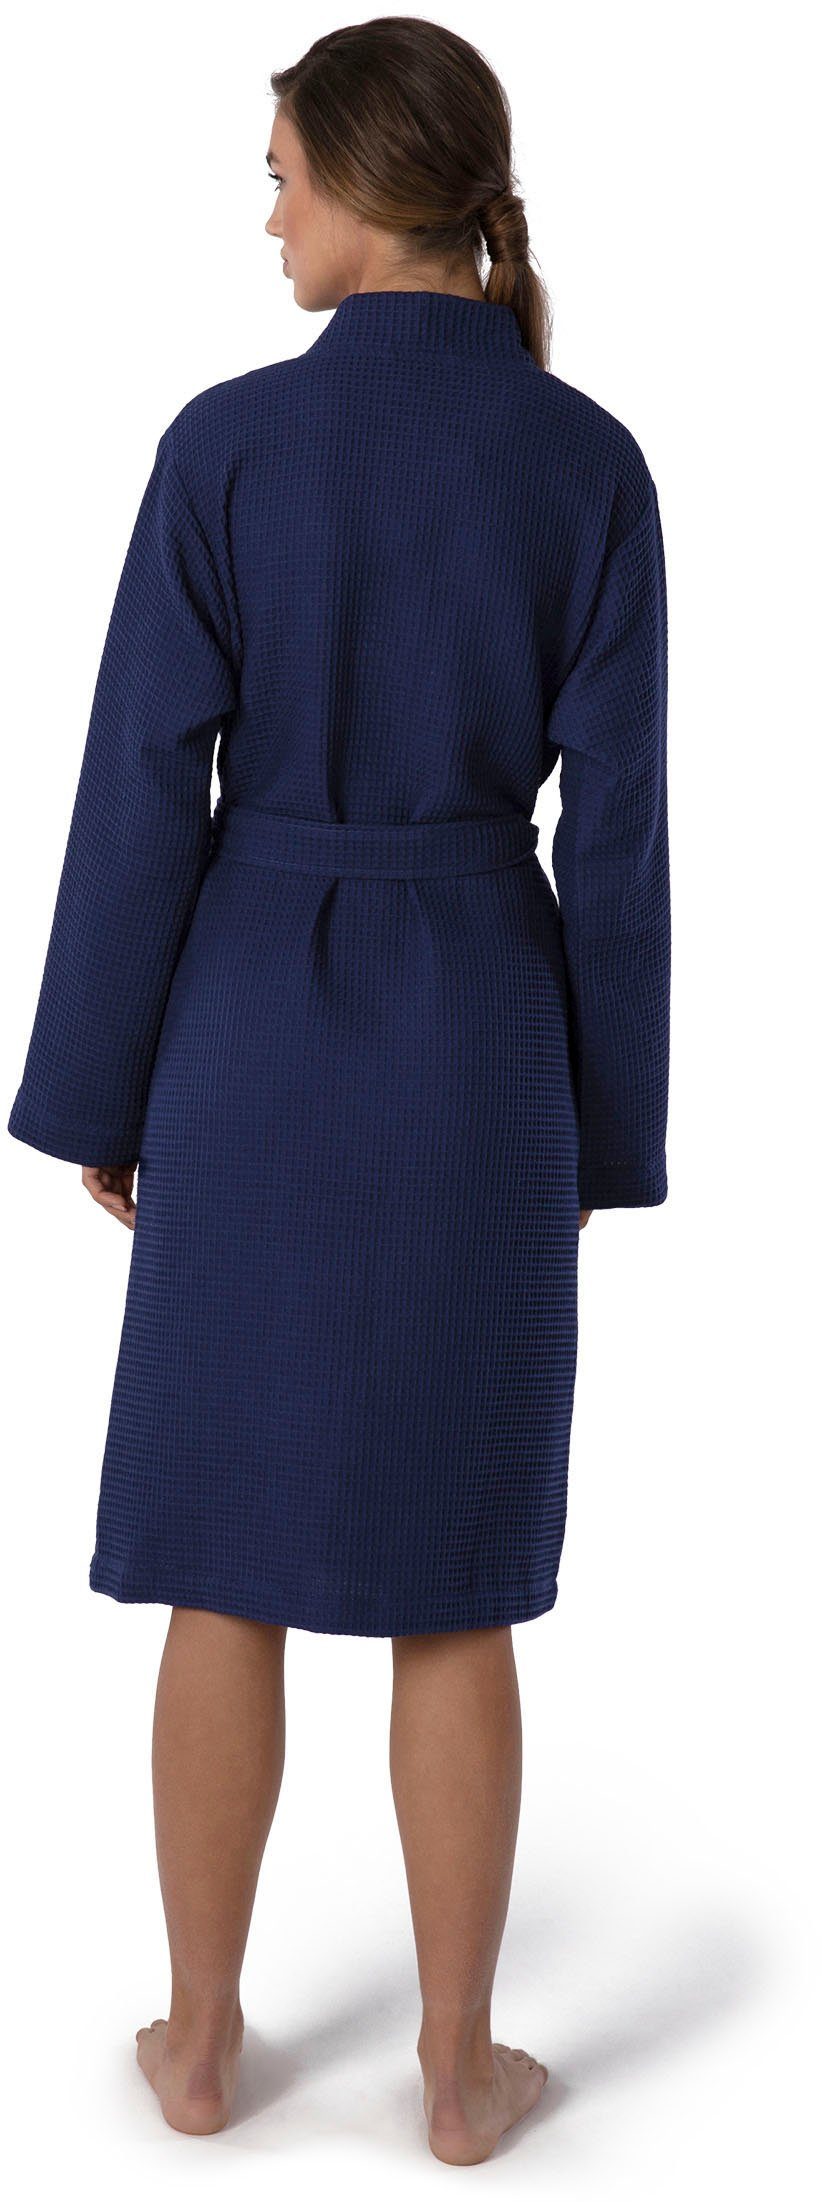 dunkelblau Homewear, Kimono Gürtel, Kurzform, Möve Kimono-Kragen, Piqué, Piquée-Oberfläche